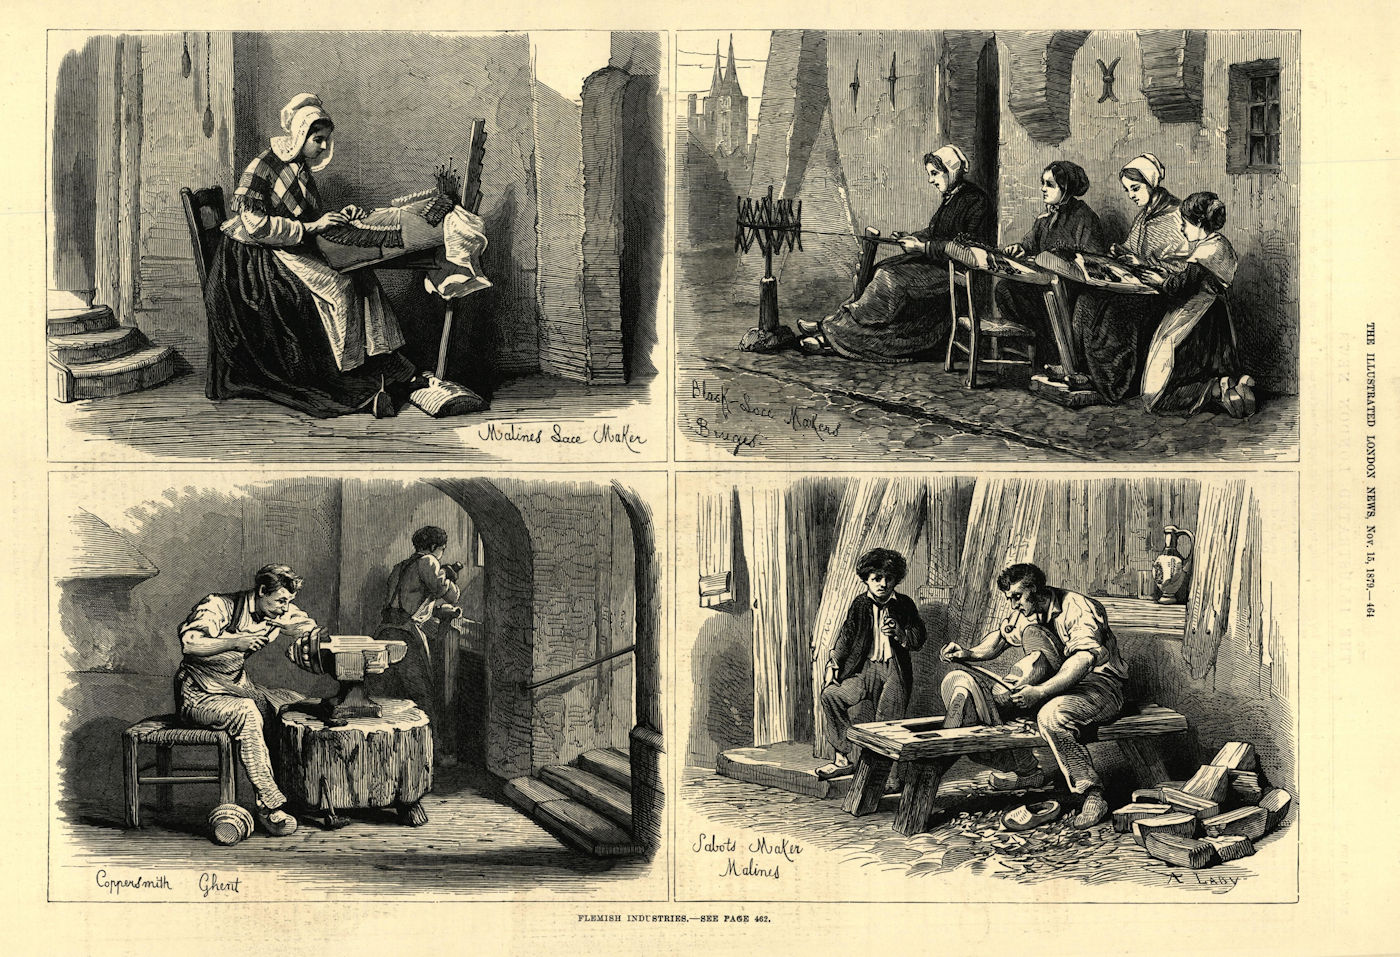 Flemish Trades. Mechelen Bruges Ghent lace maker coppersmith cobbler 1879